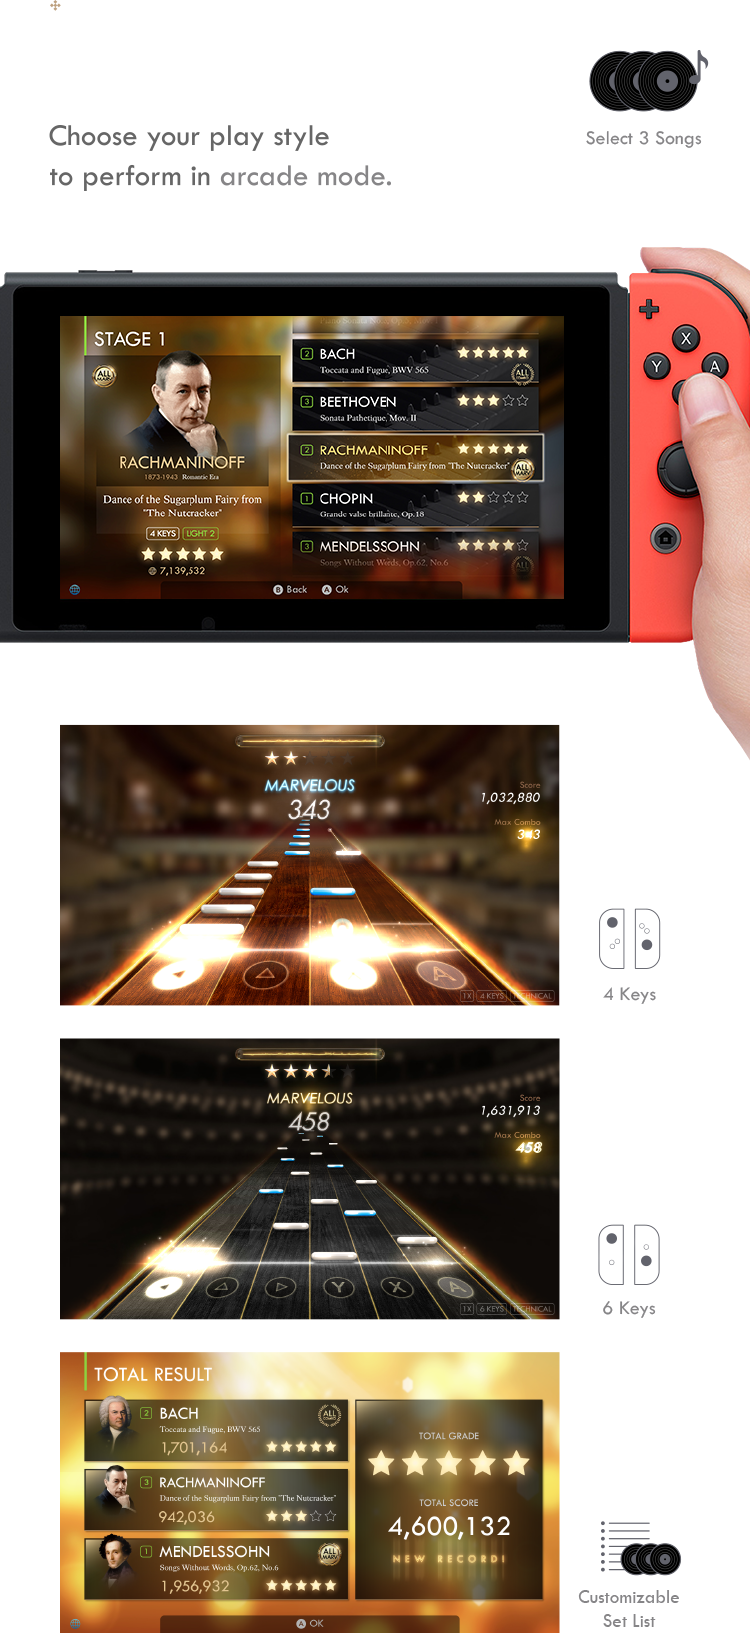 Análise: Pianista: The Legendary Virtuoso (Switch) combina simplicidade e  música com maestria - Nintendo Blast